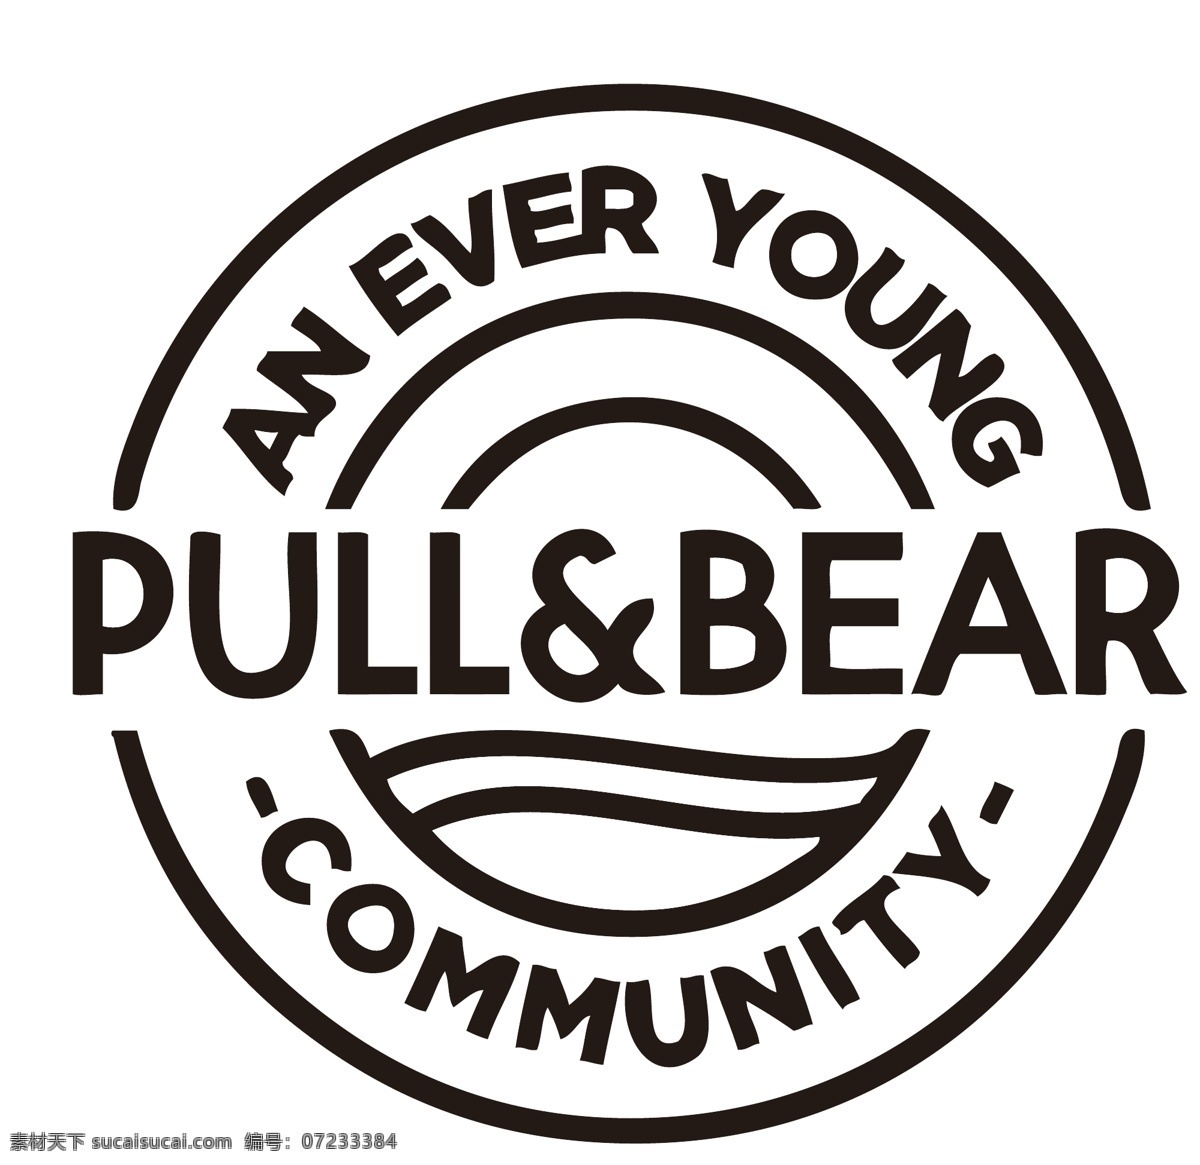 西班牙 服饰 品牌 pullbear pull a d bear zara inditex 集团 企业 logo 标志 标识标志图标 矢量